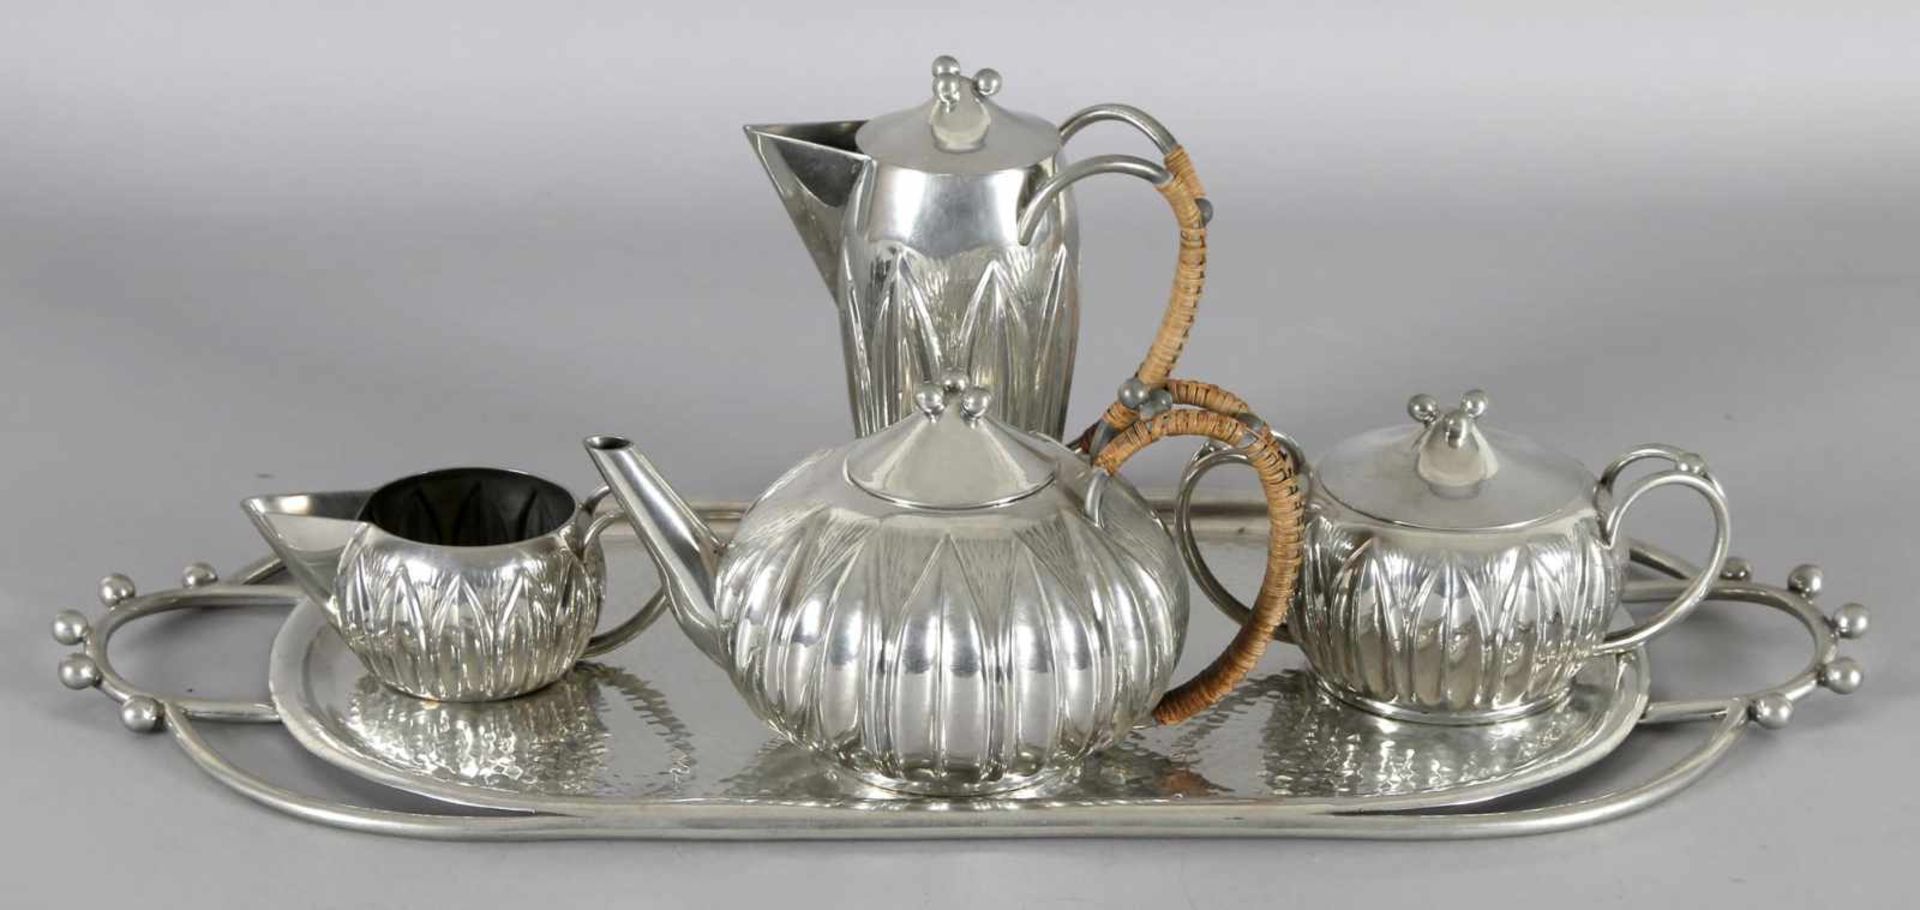 Jugendstil Tee-/Mokkaservice, 5-teilig, um 1900, Zinn, a.e. Charas gemarkt